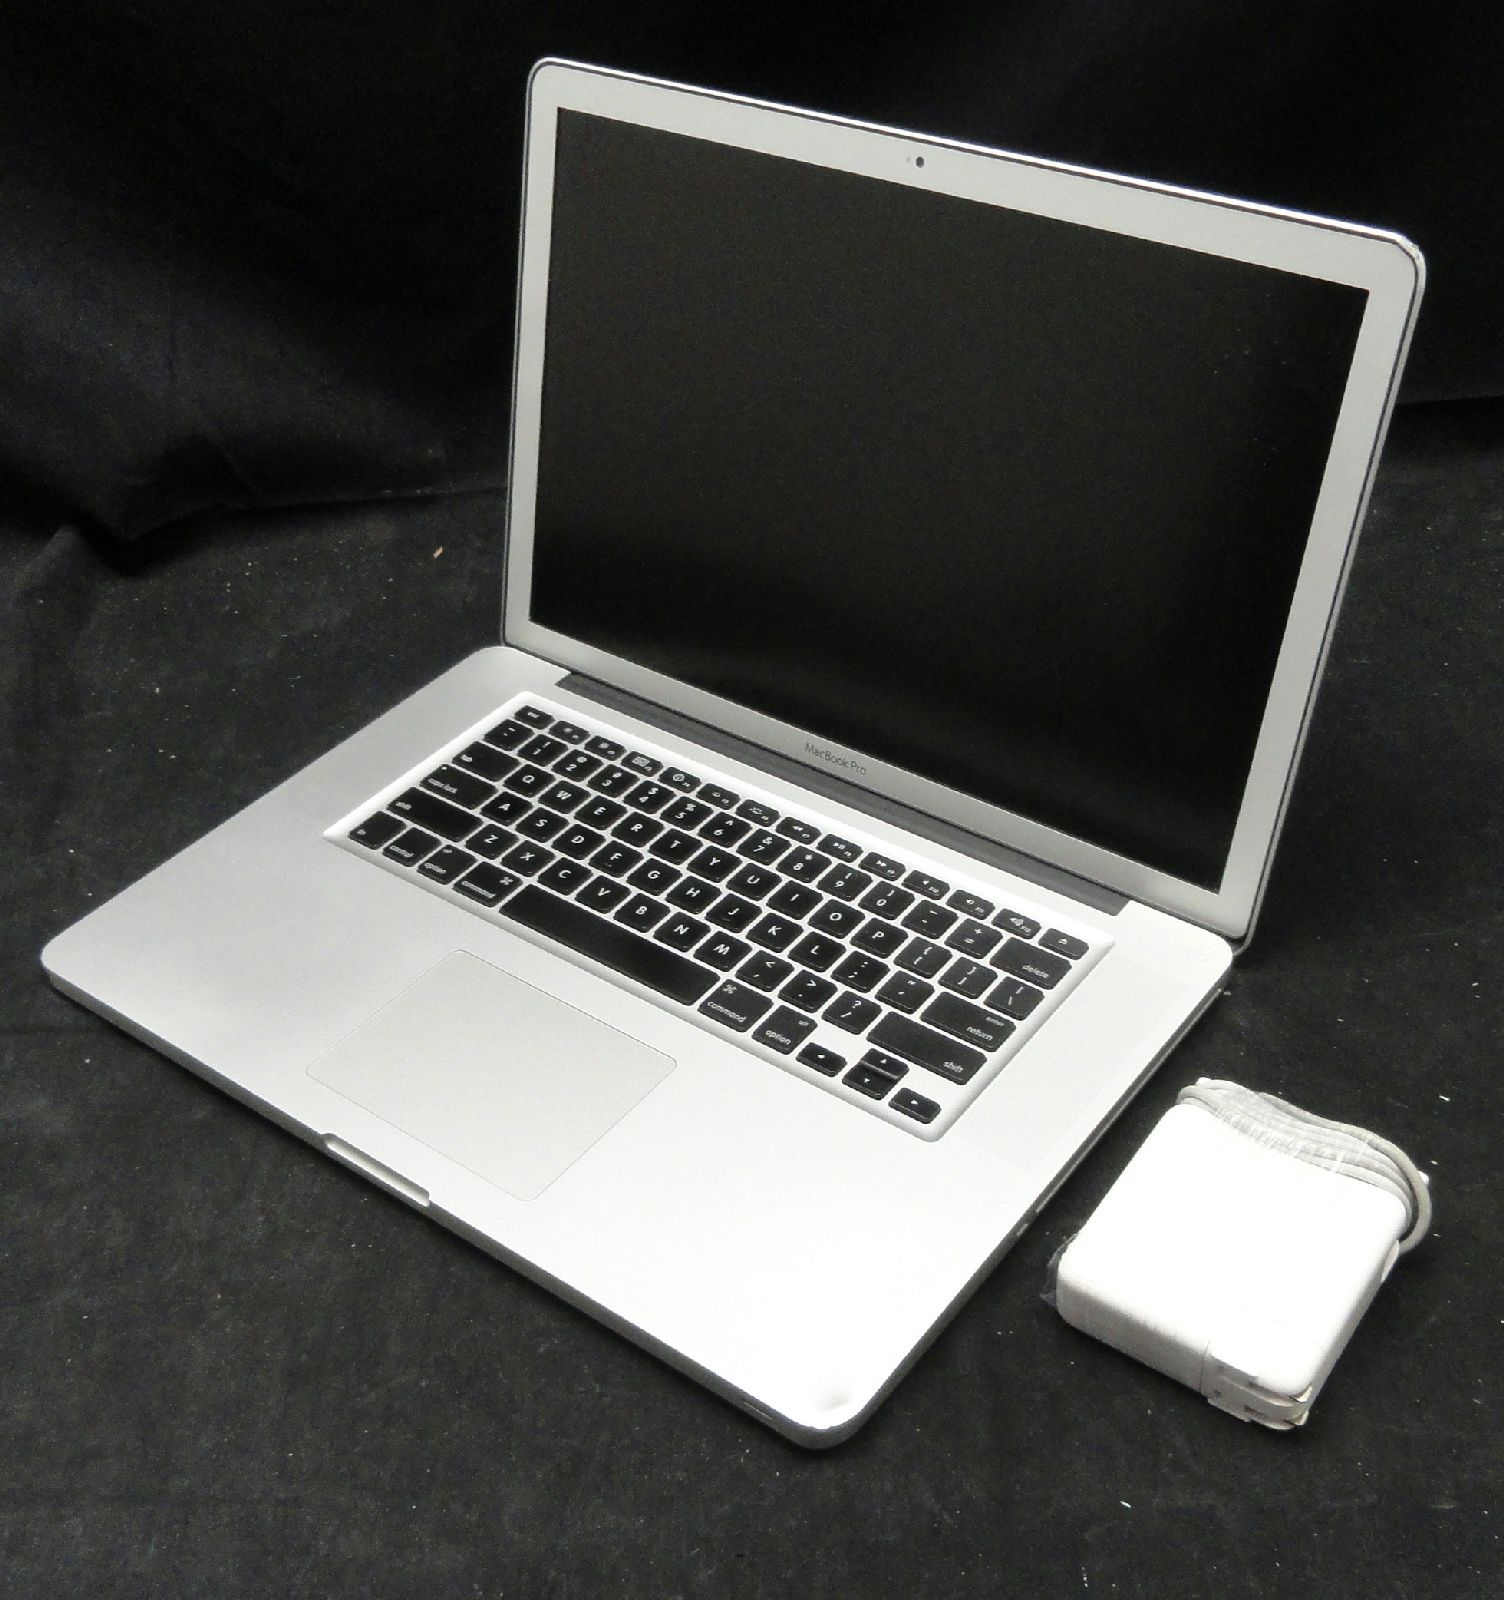 apple macbook pro 2010 specs